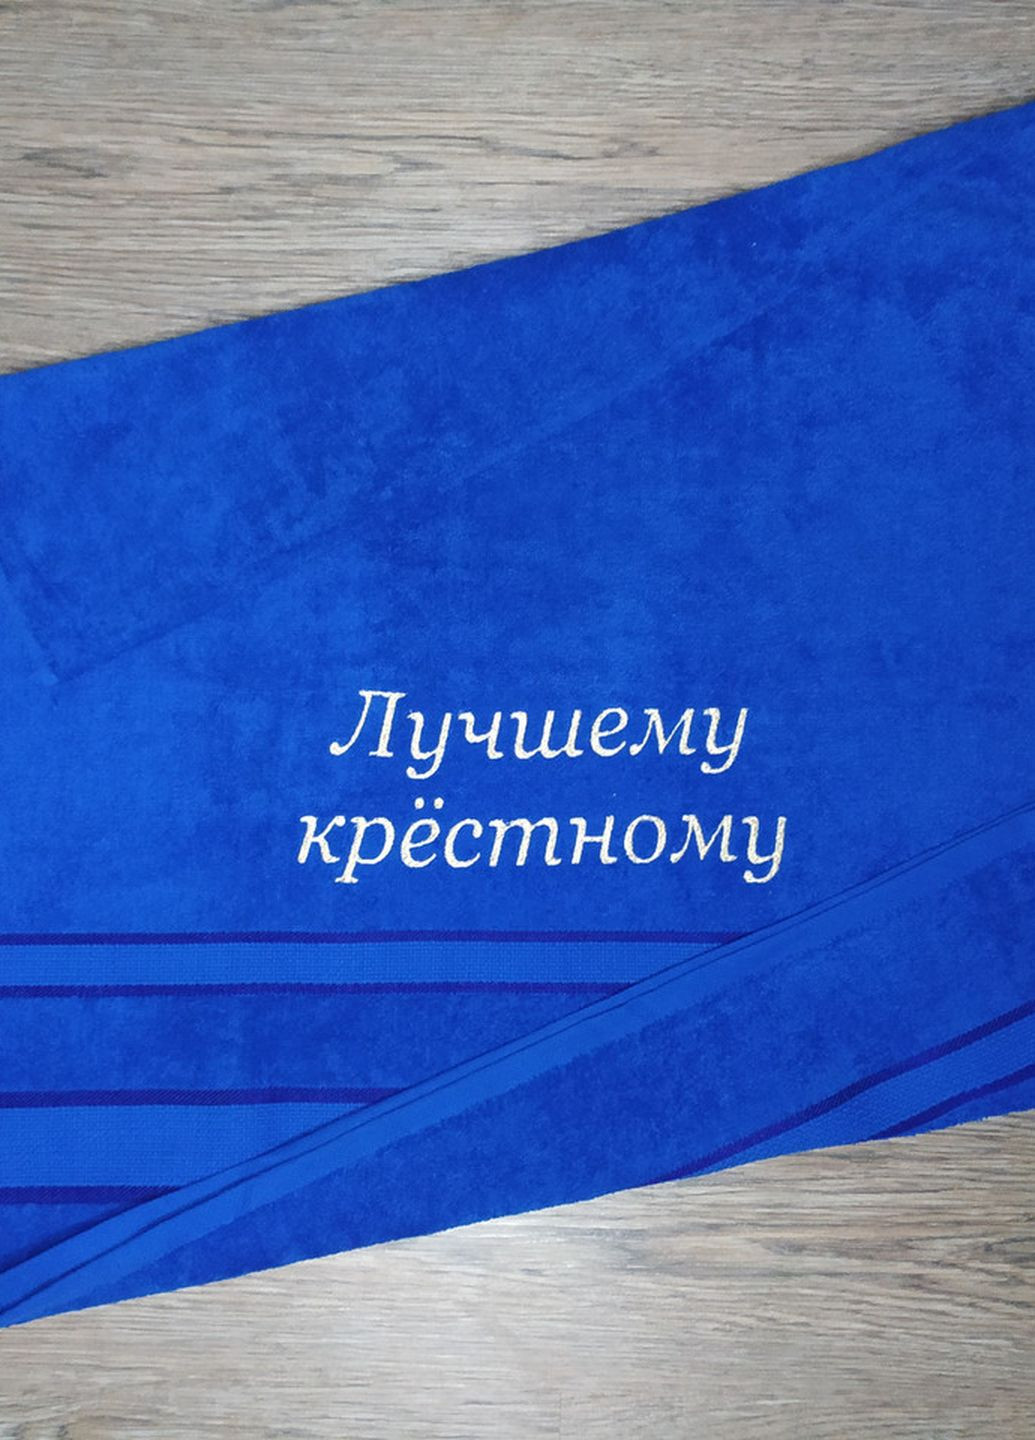 No Brand полотенце с вышивкой махровое лицевое 50*90 синий крестному папе куму 00369 однотонный синий производство - Украина